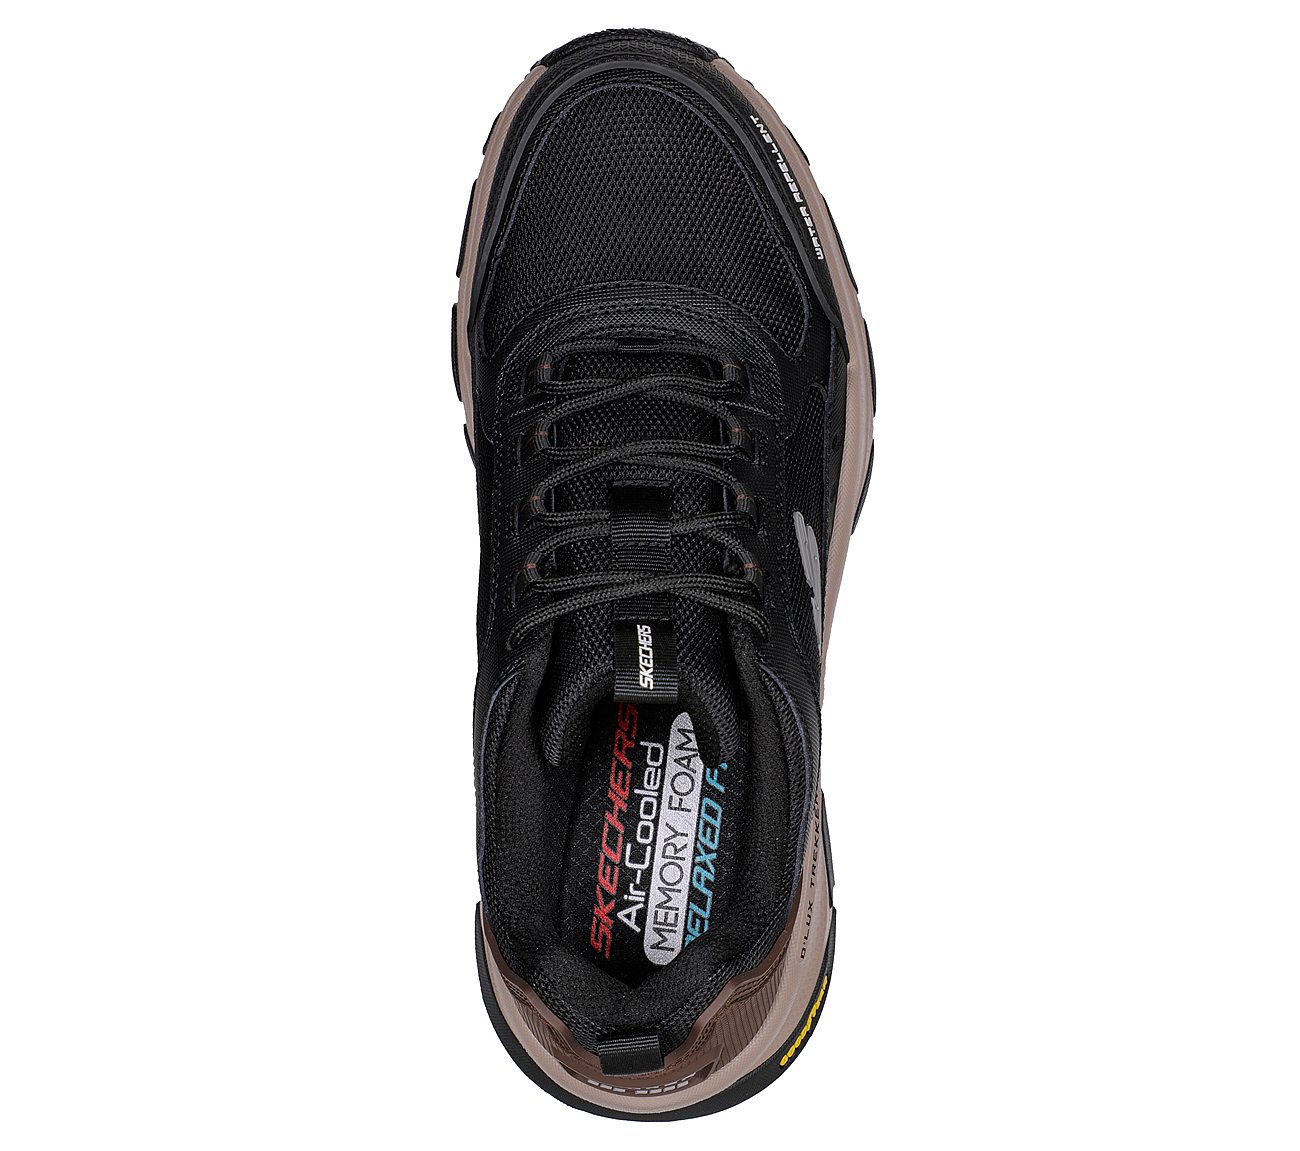 D'LUX TREKKER, BLACK/NATURAL Footwear Top View